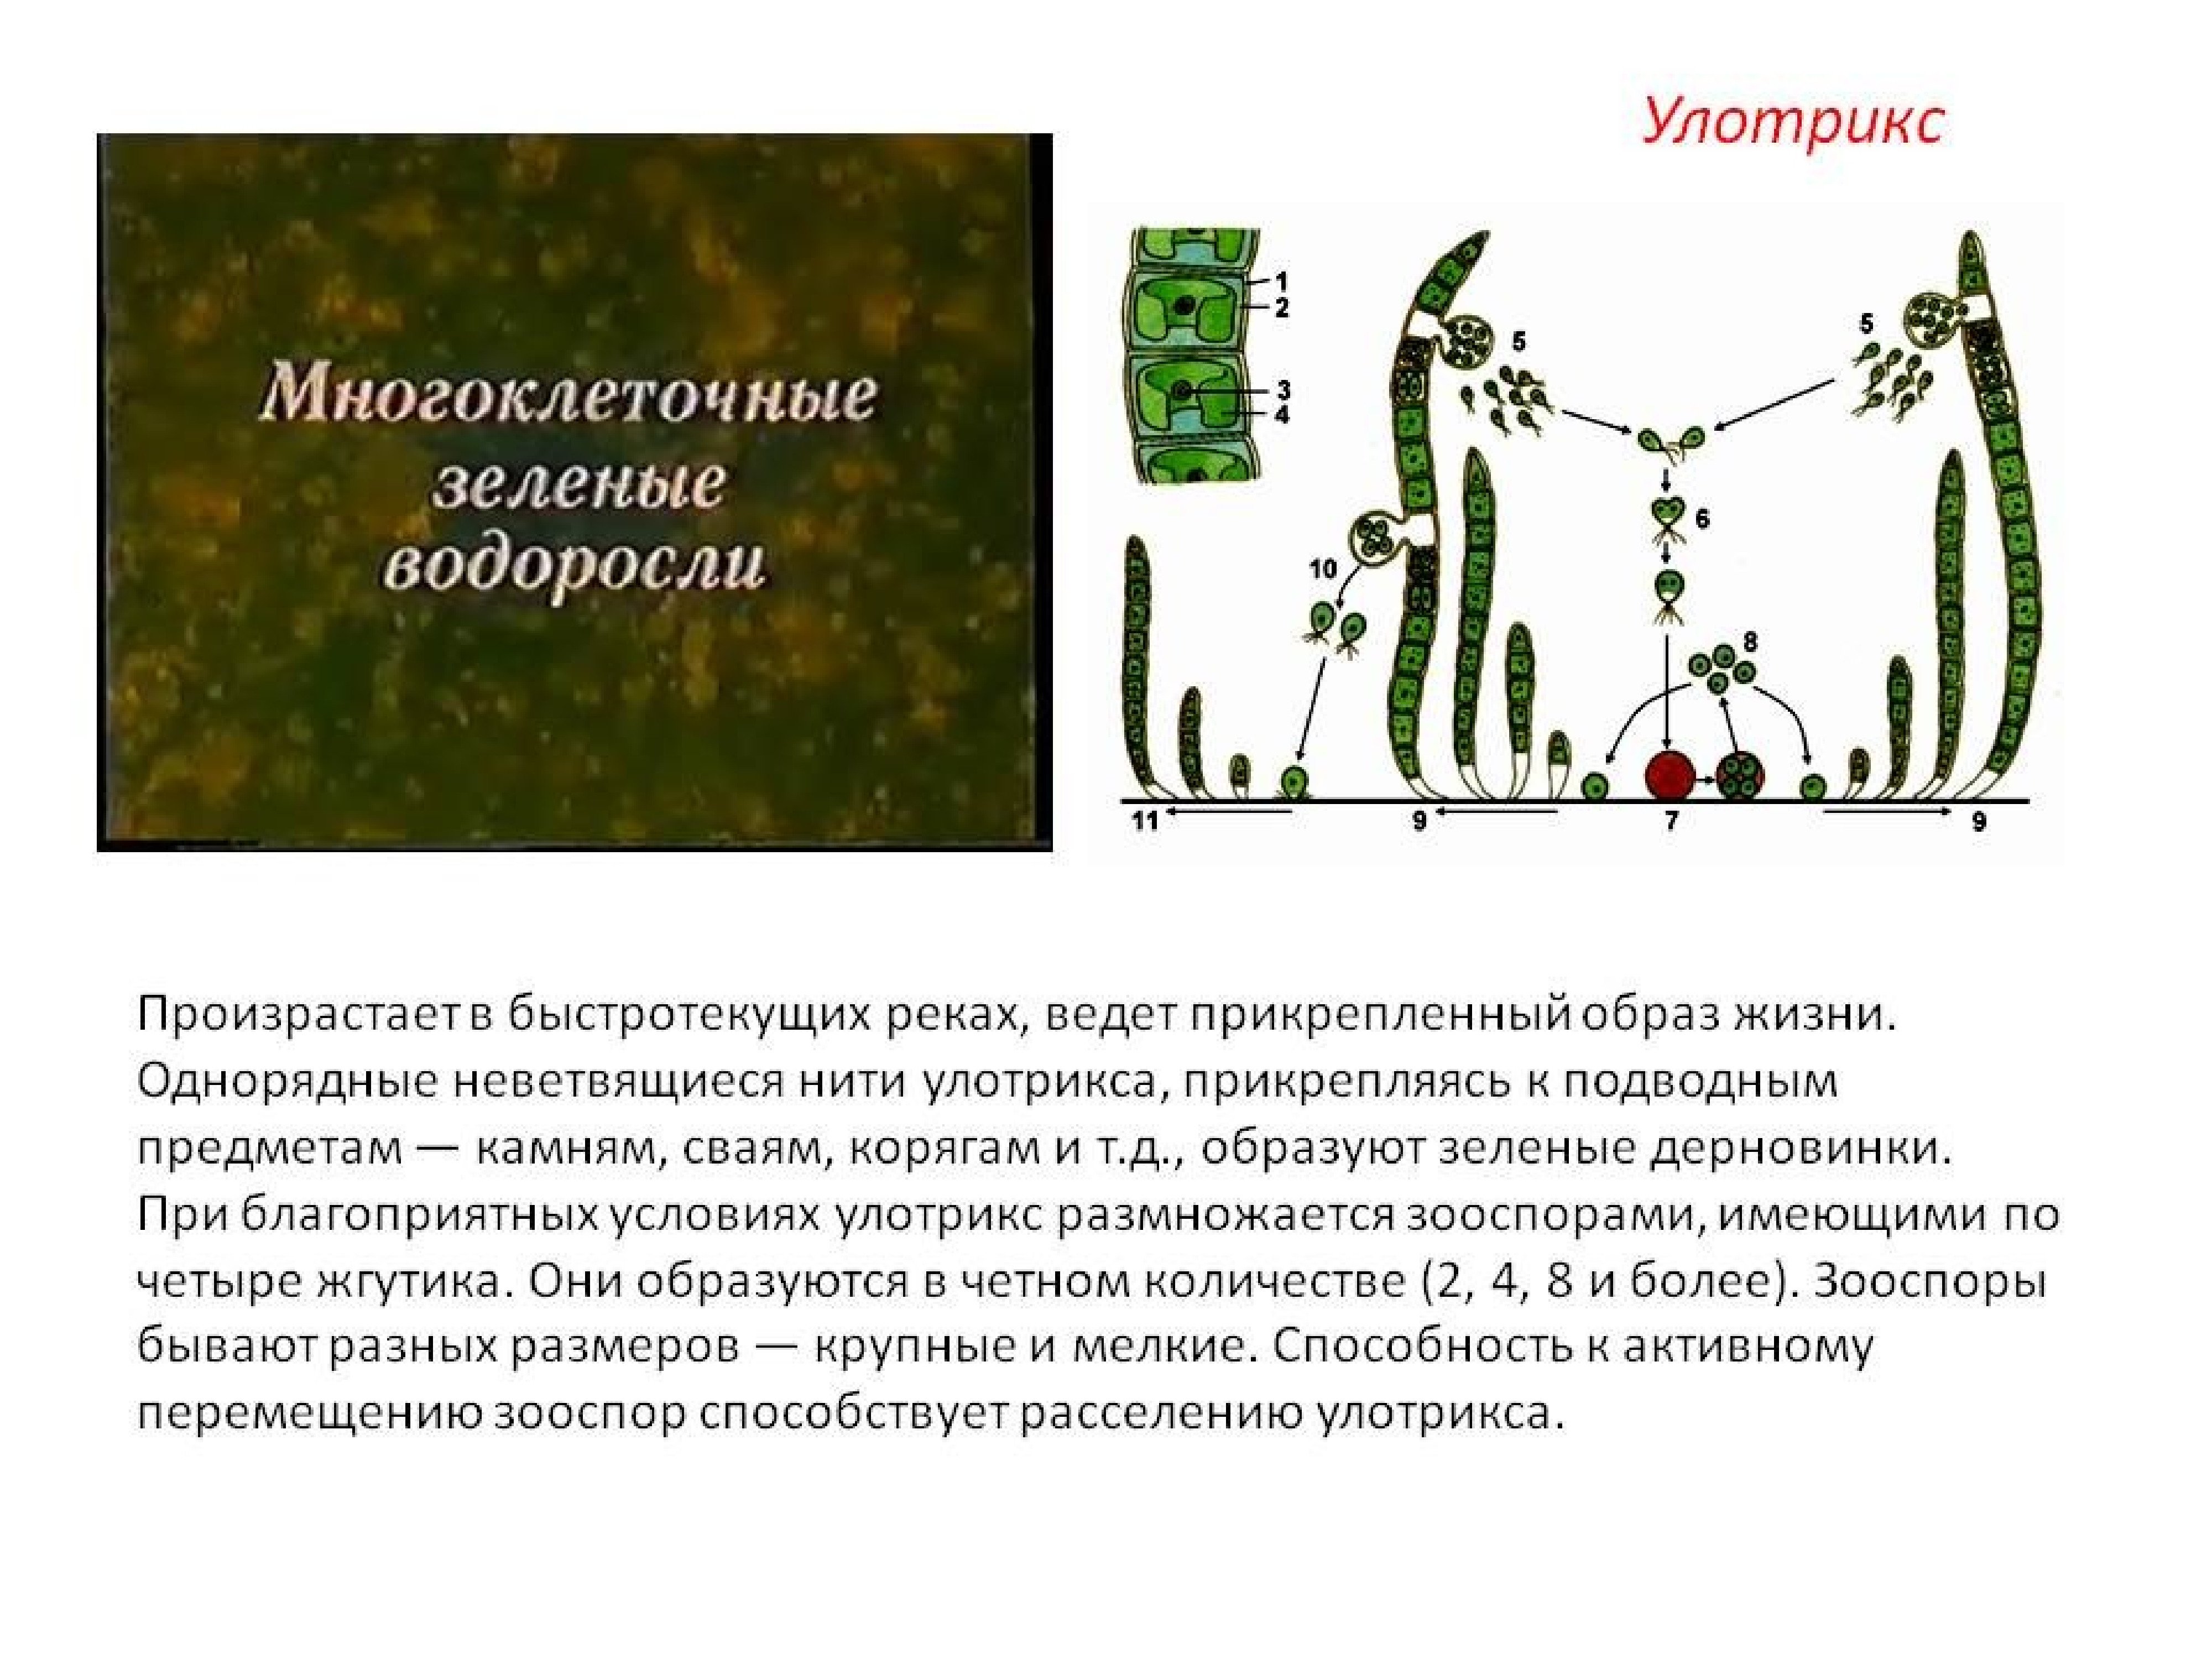 Что такое прикрепленный образ жизни в биологии. Многоклеточные водоросли улотрикс. Ламинария и улотрикс. Зеленые водоросли улотрикс. Нити водоросли улотрикса.